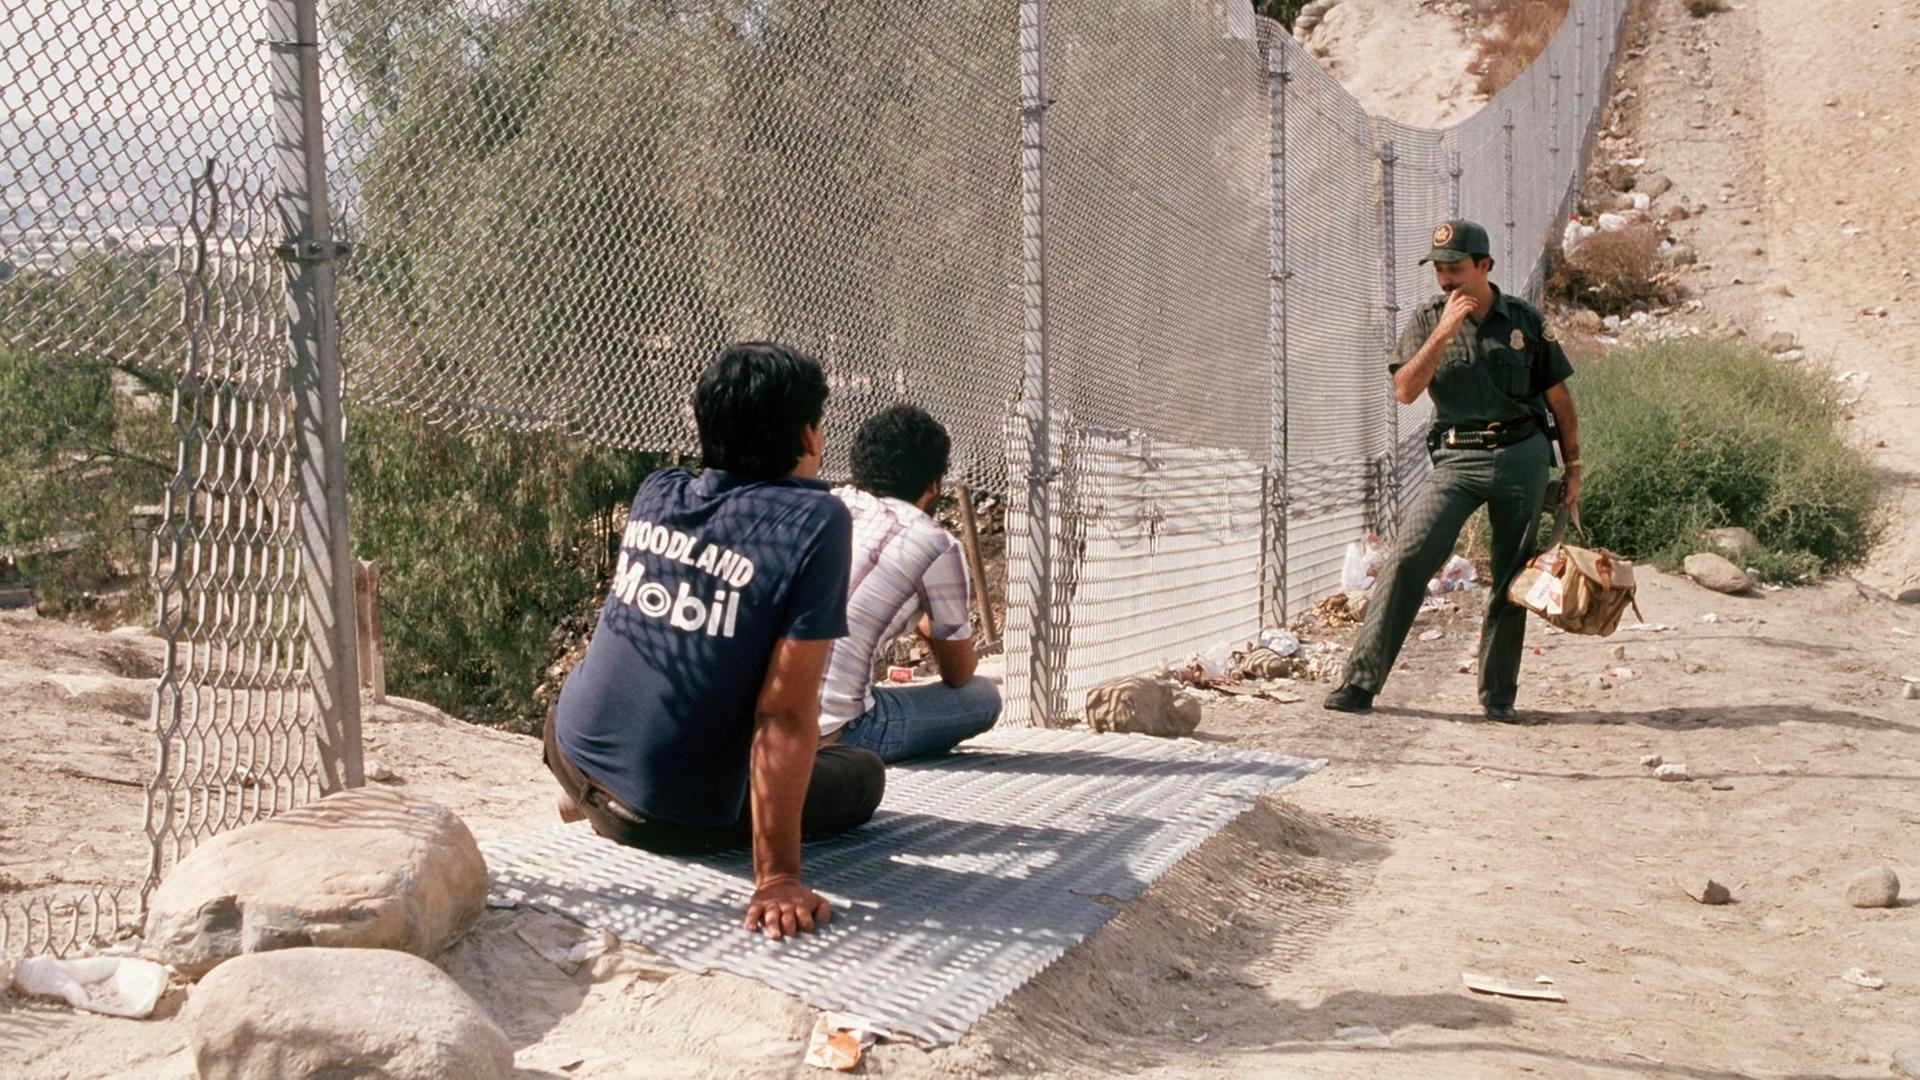 Ein US-Polizist steht an einem Grenzzaun. Vor ihm sitzen zwei Jugendliche im Sand.